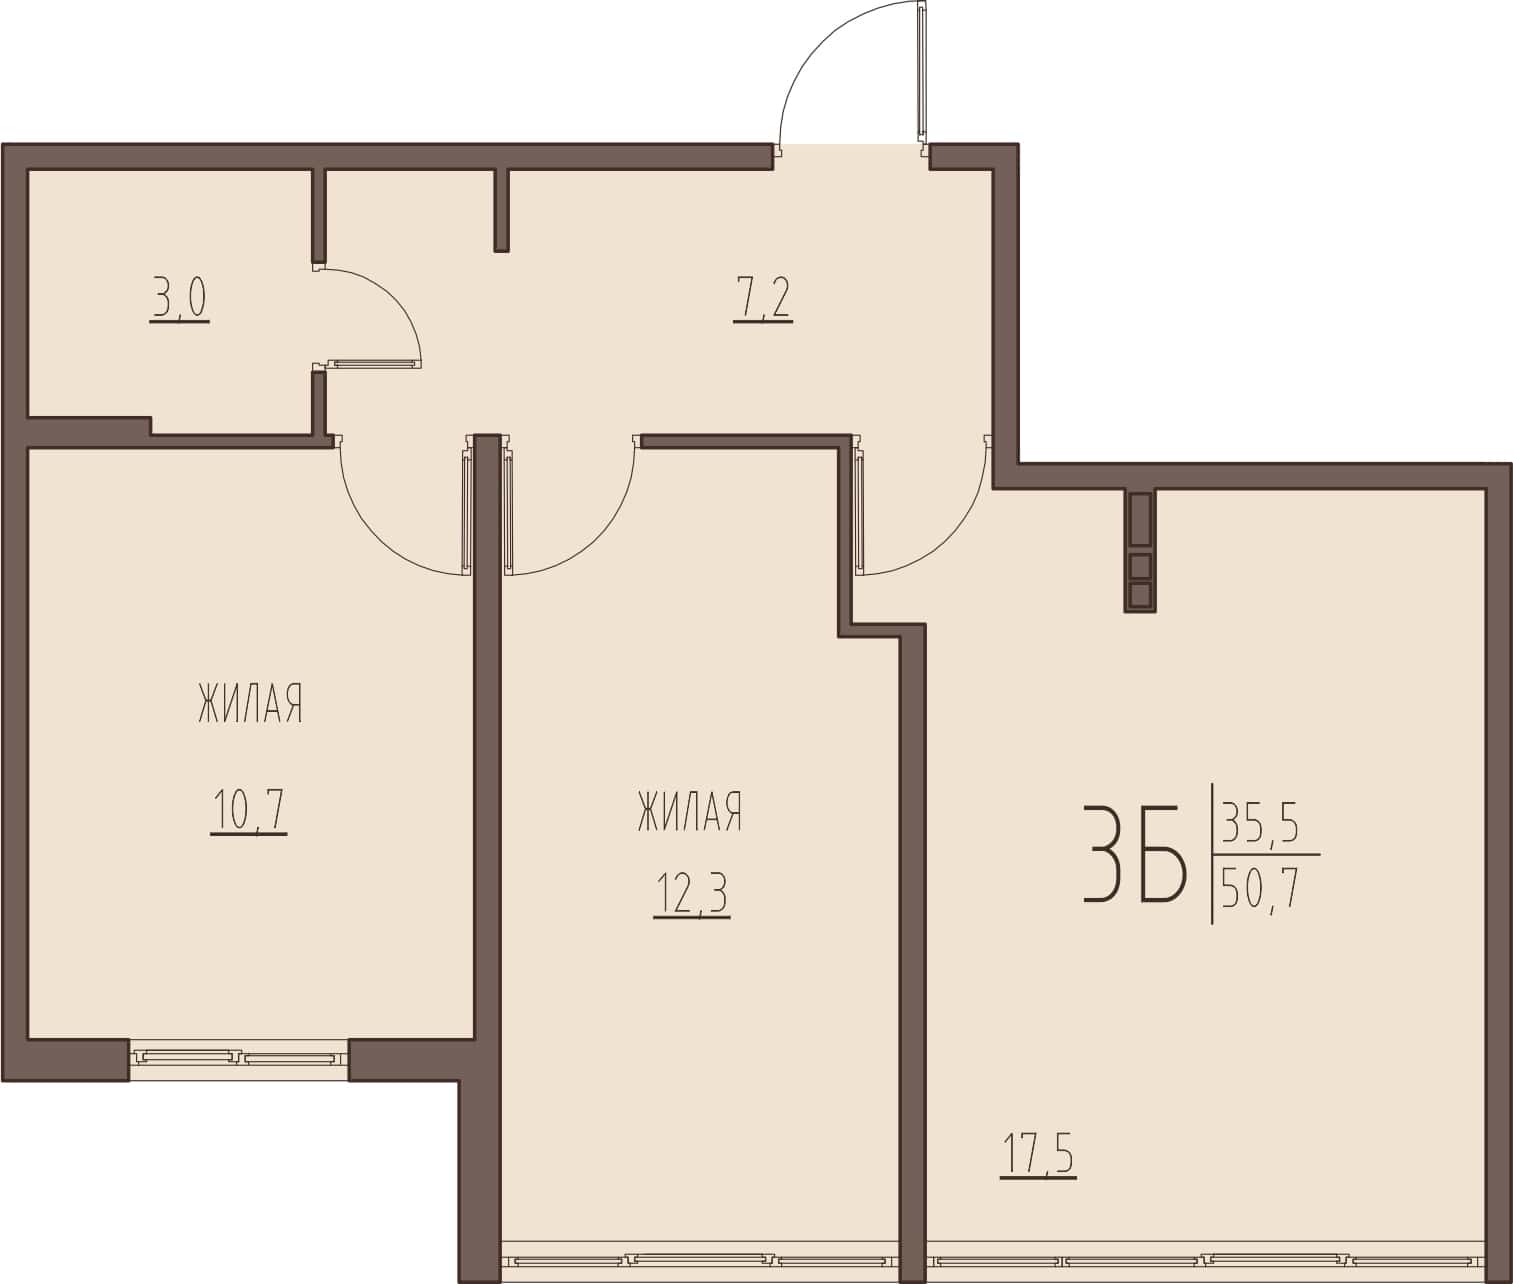 3-комнатная квартира 50,7 м² с кухней-гостиной и двумя изолированными спальнями